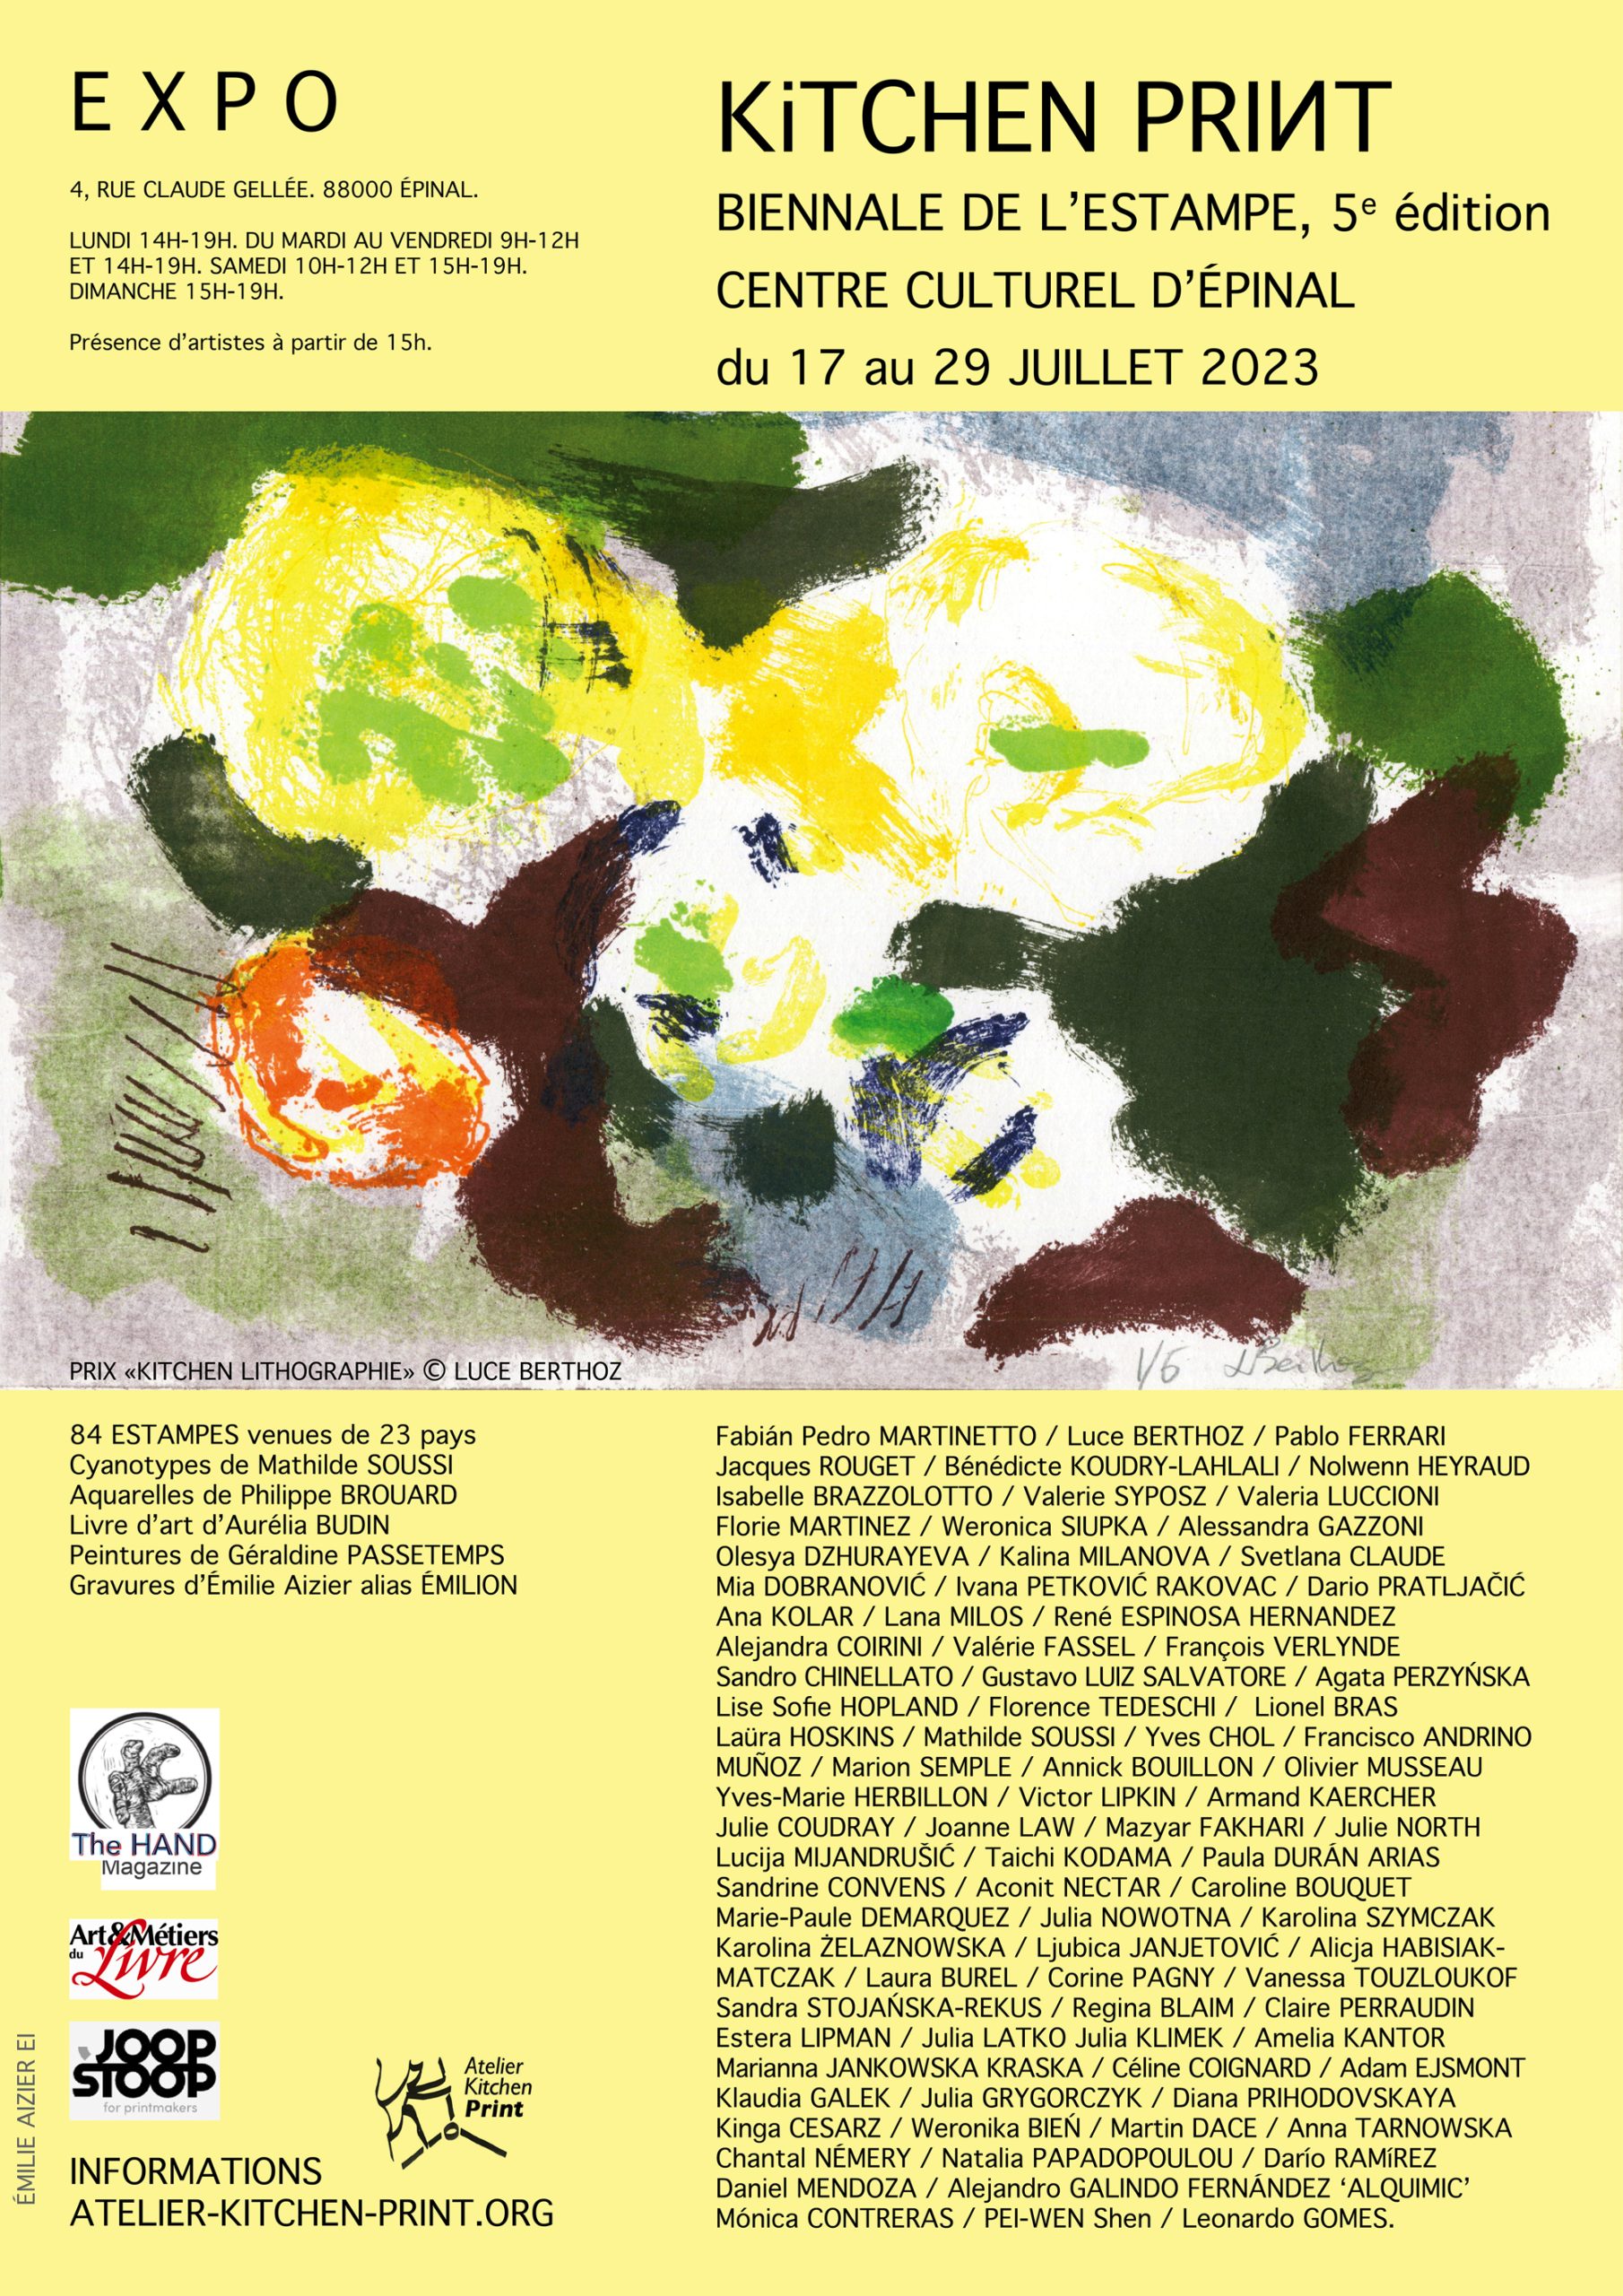 EXPOSITION “Kitchen Print Biennale 2021-2022” du 17 au 29 juillet 2023 au Centre culturel d’Épinal / EXHIBITION at the cultural center of the city of Épinal